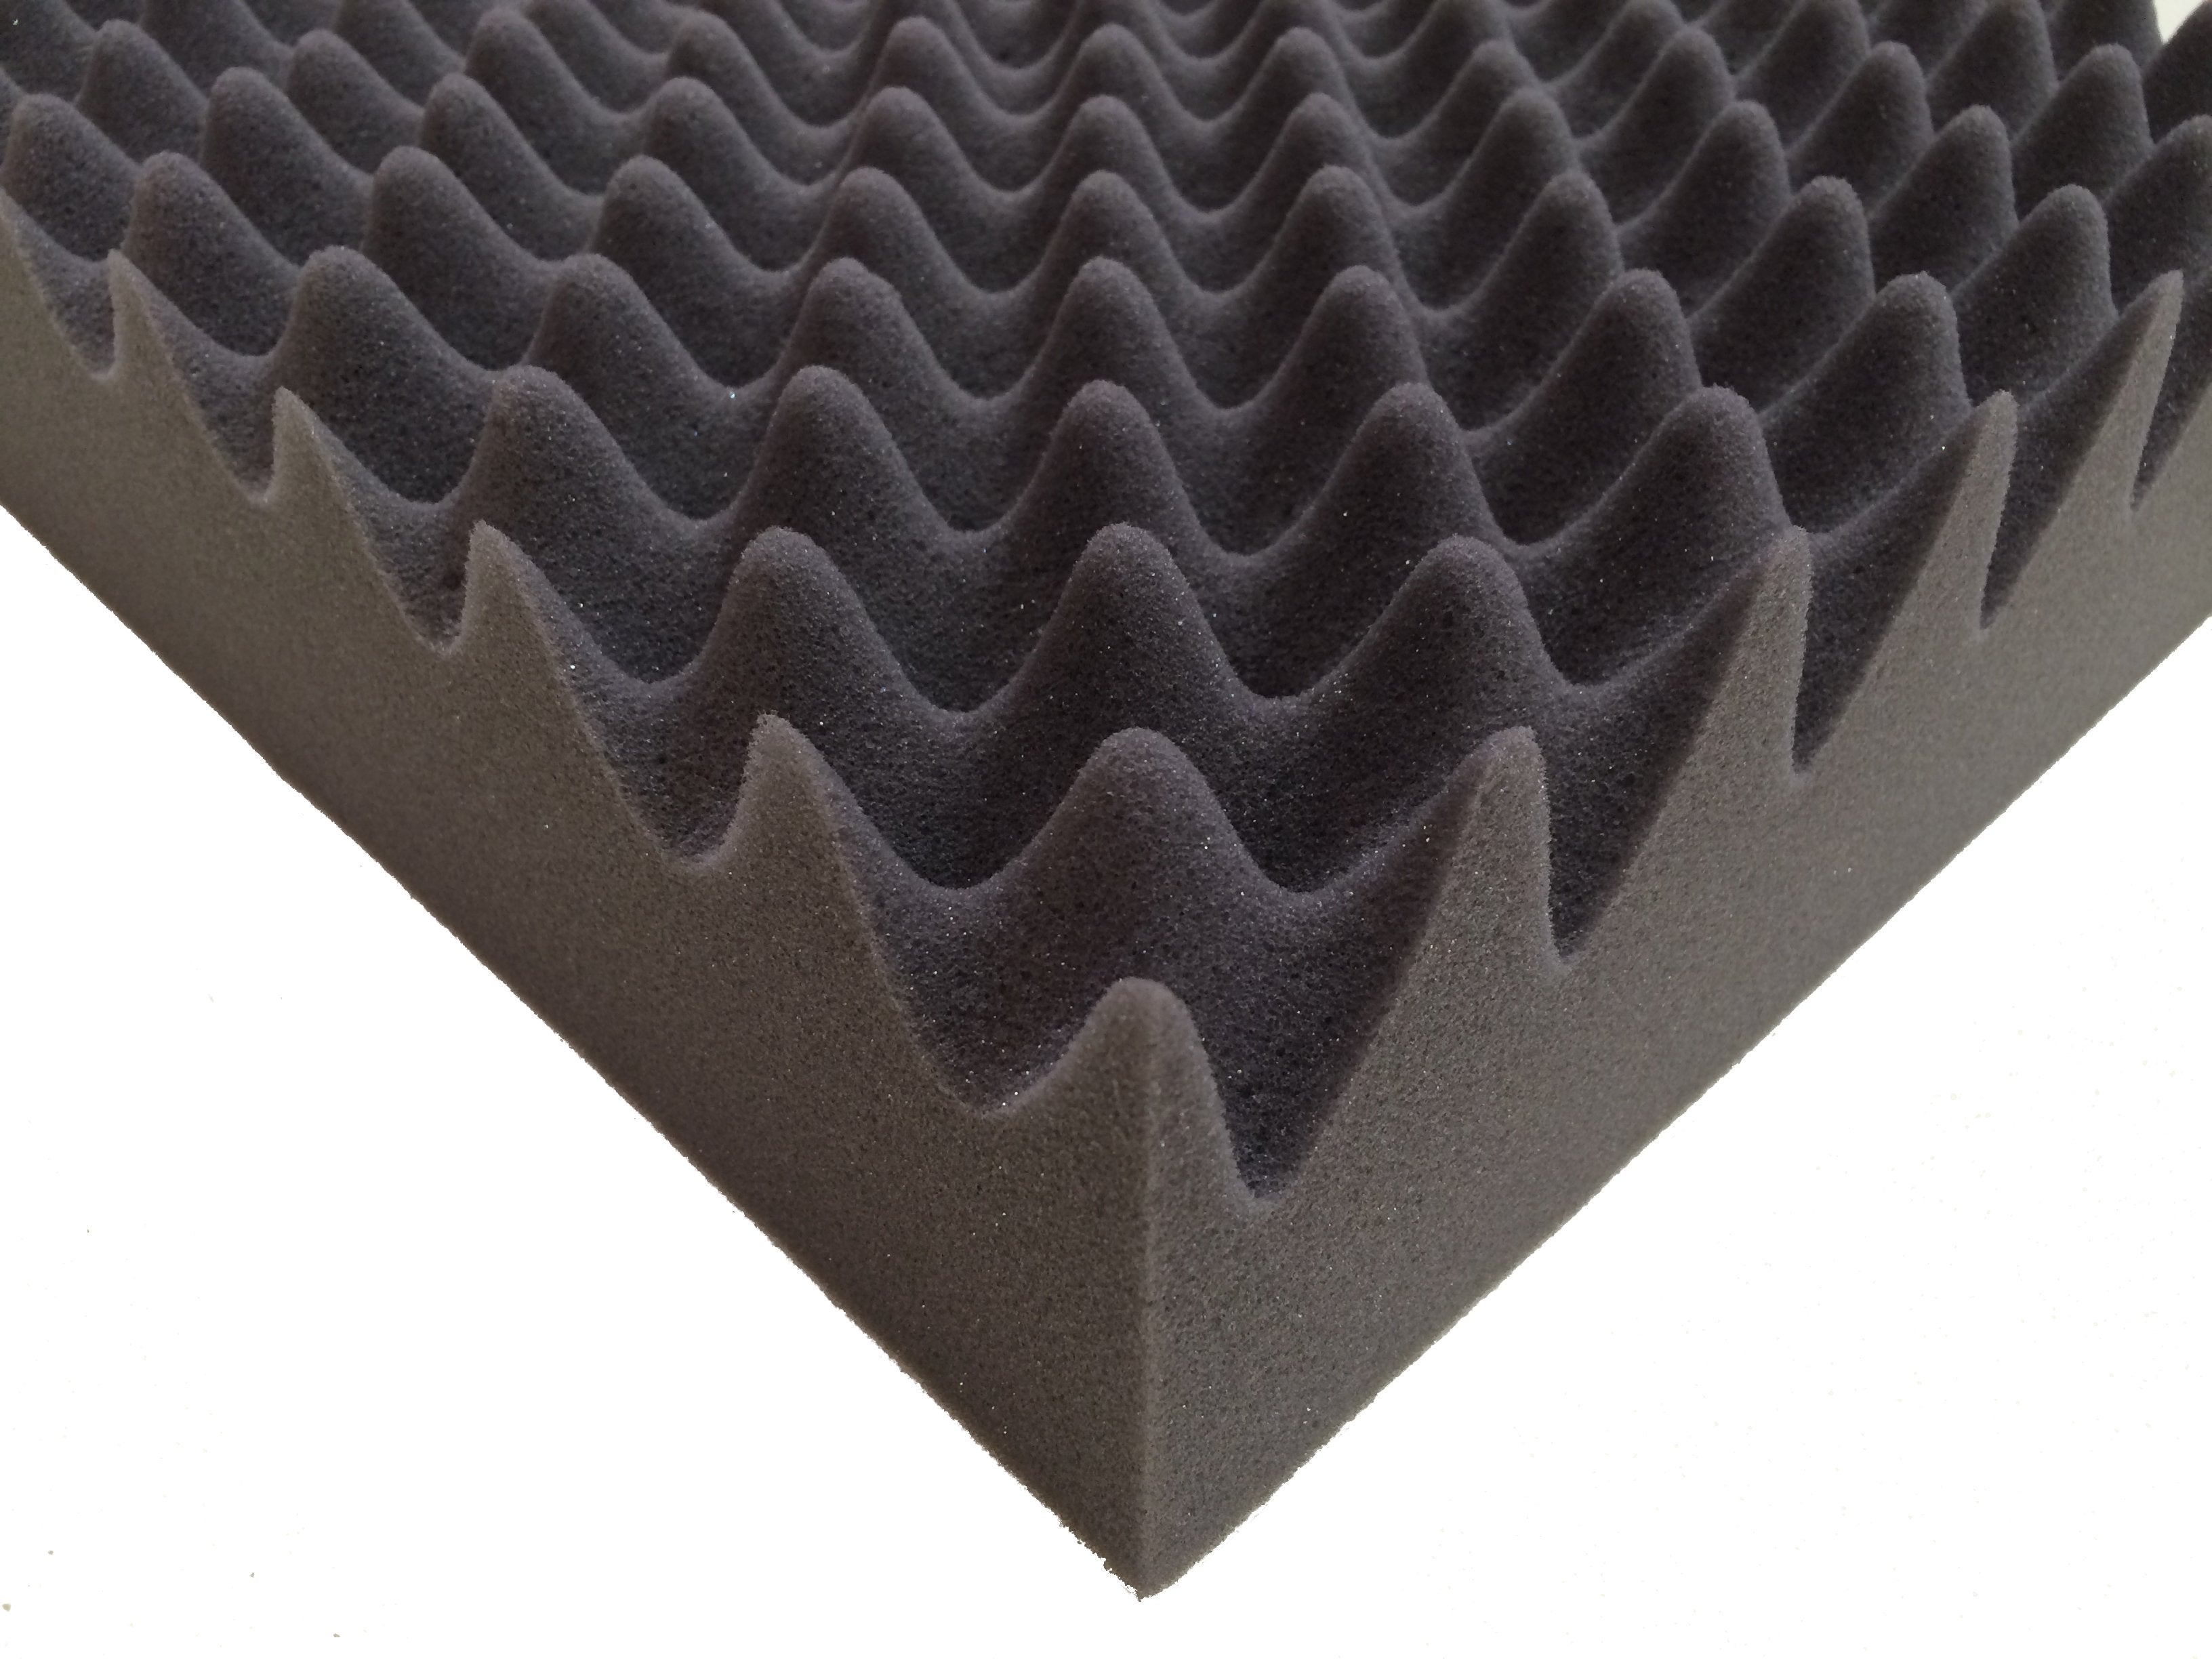 F.A.T. PRO 10" Acoustic Studio Foam Tile Pack - Advanced Acoustics